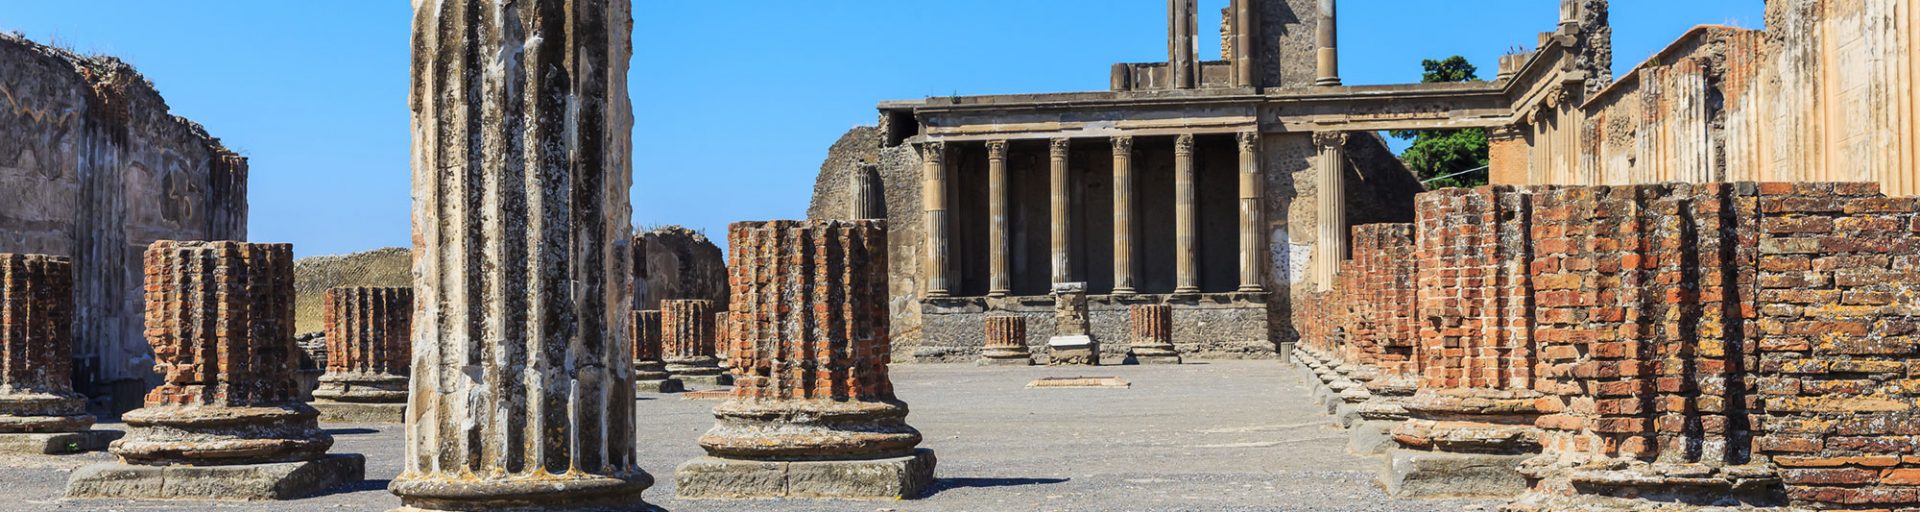 Hotel a Pompei: hotel con vista sugli scavi archeologici